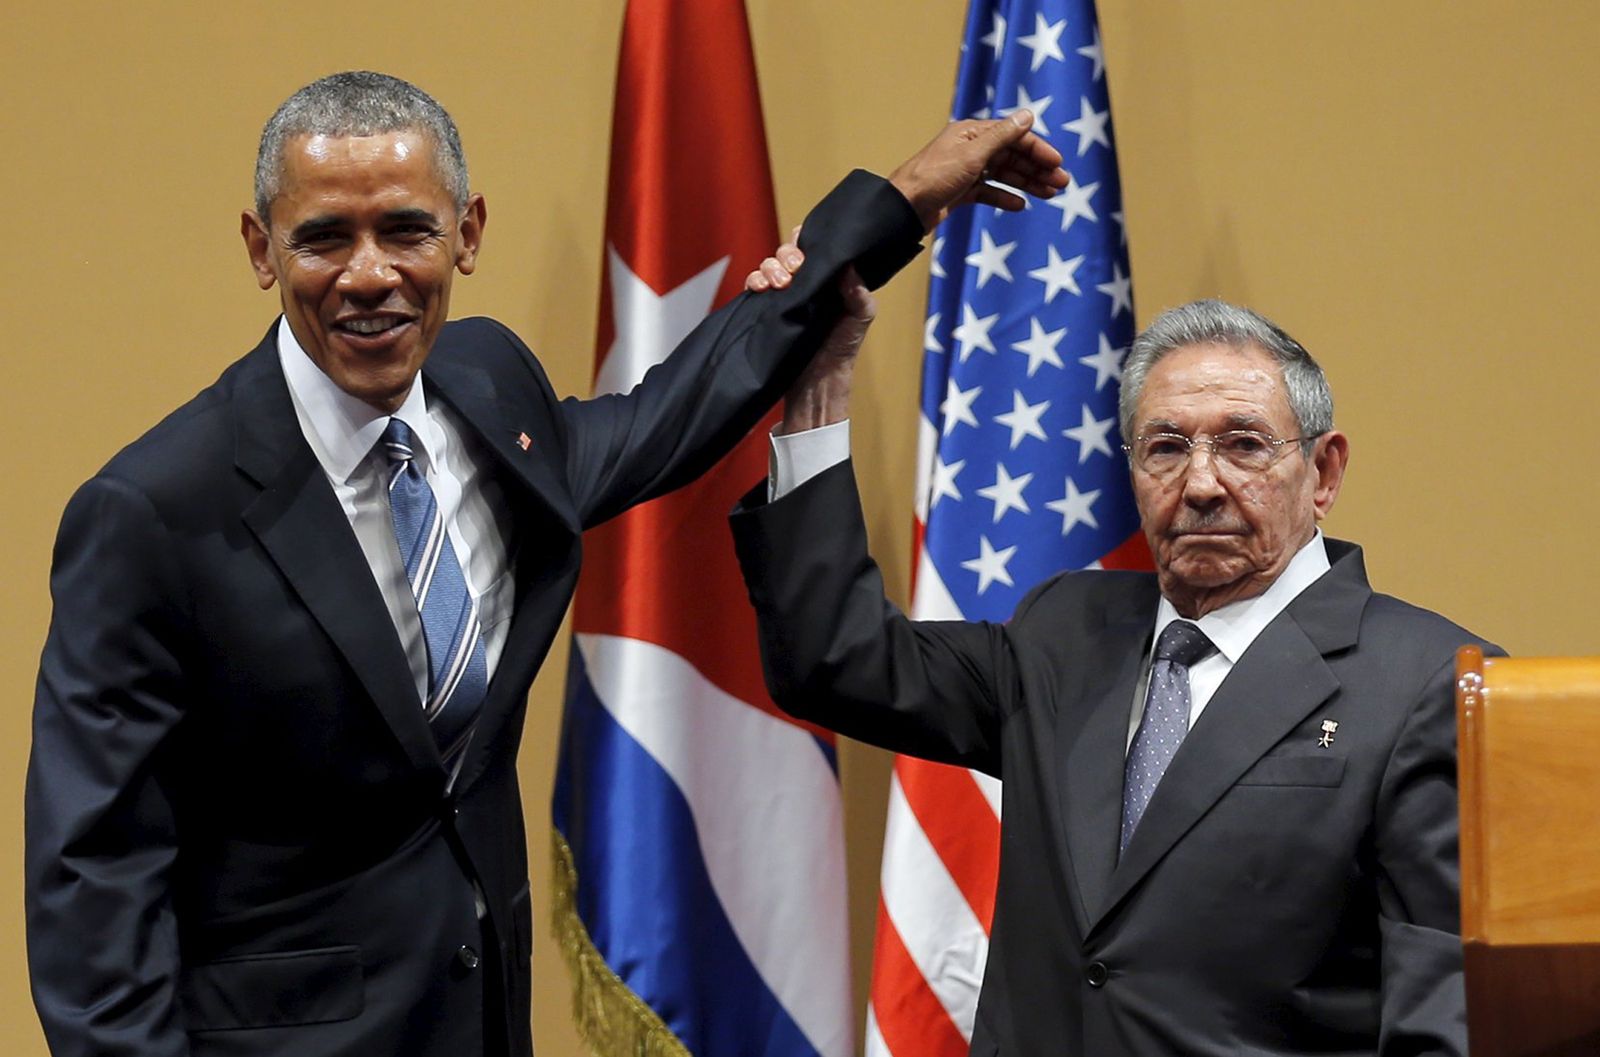 الرئيسان السابقان، الكوبي راوول كاسترو والأميركي باراك أوباما، بعد مؤتمر صحافي في هافانا - 21 مارس 2016 - REUTERS